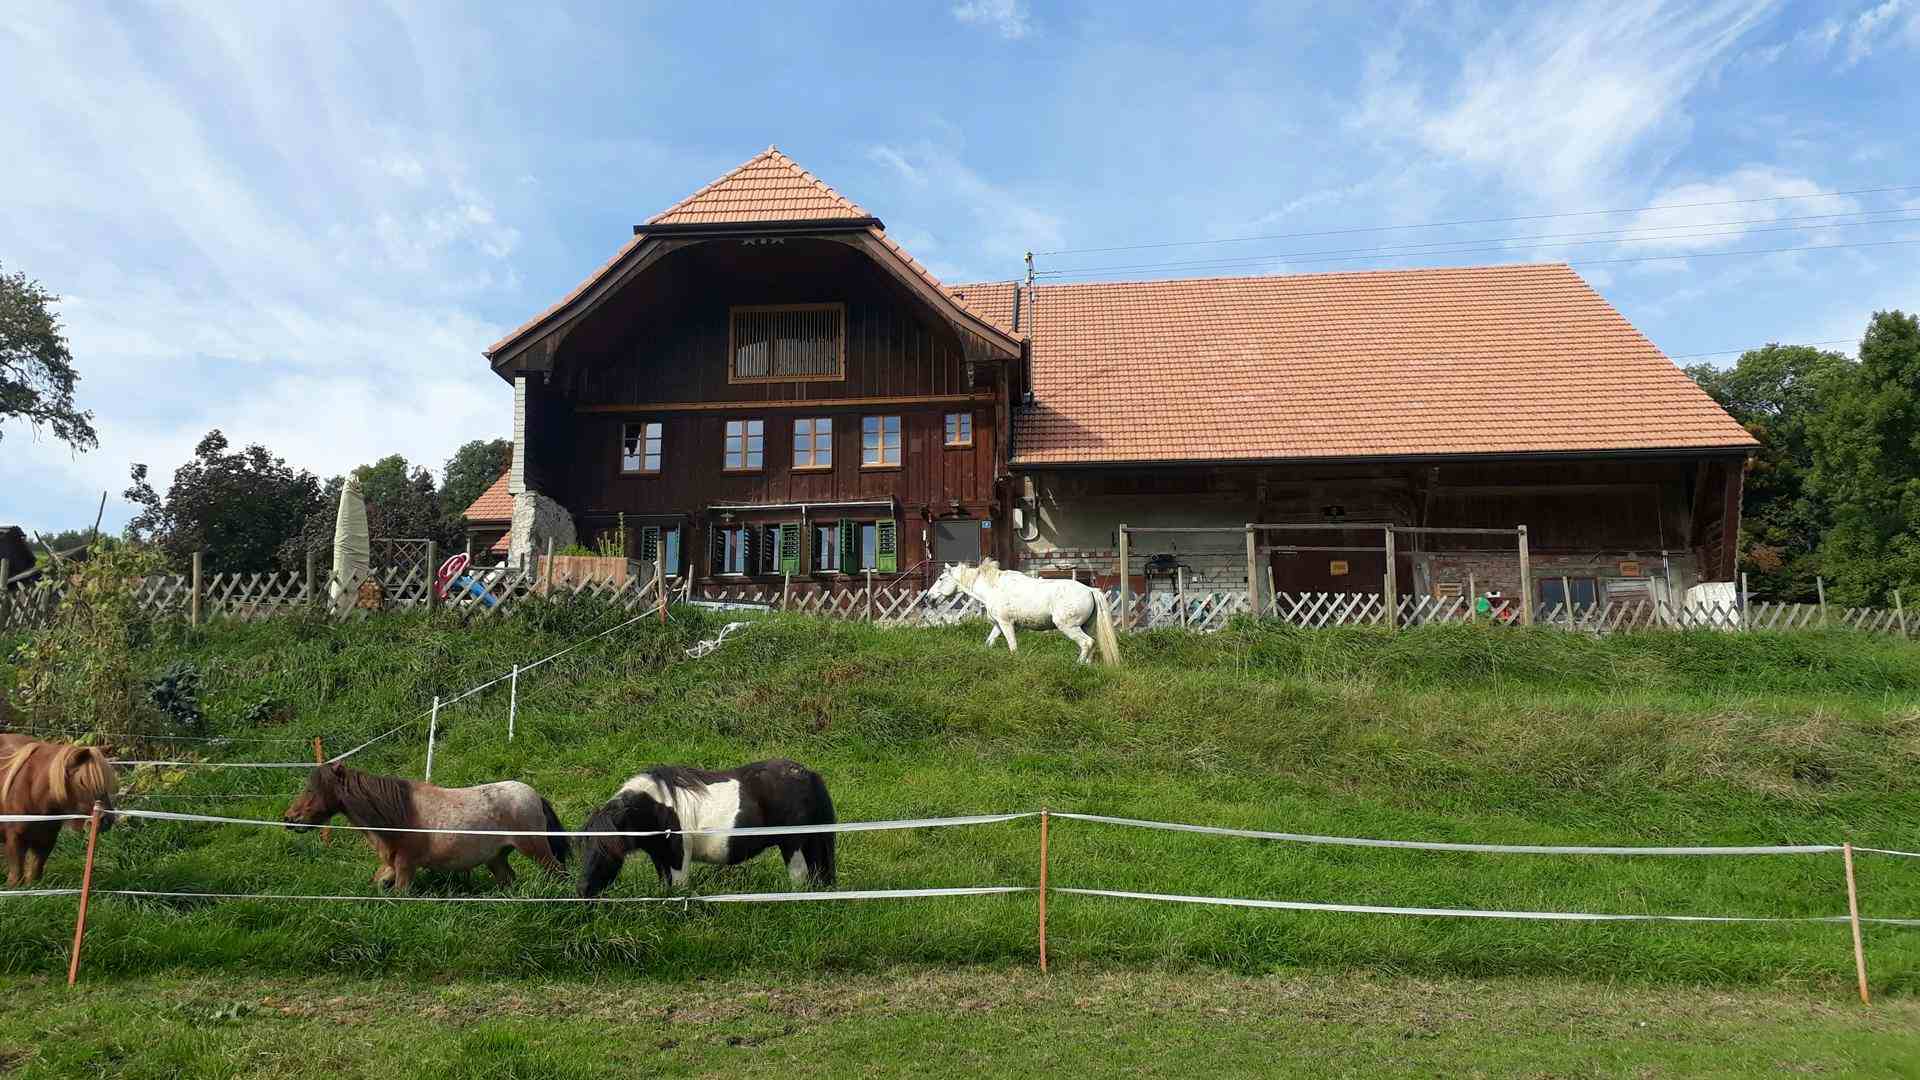 Agrotomato SA, producer in Giubiasco canton of Tessin in Switzerland